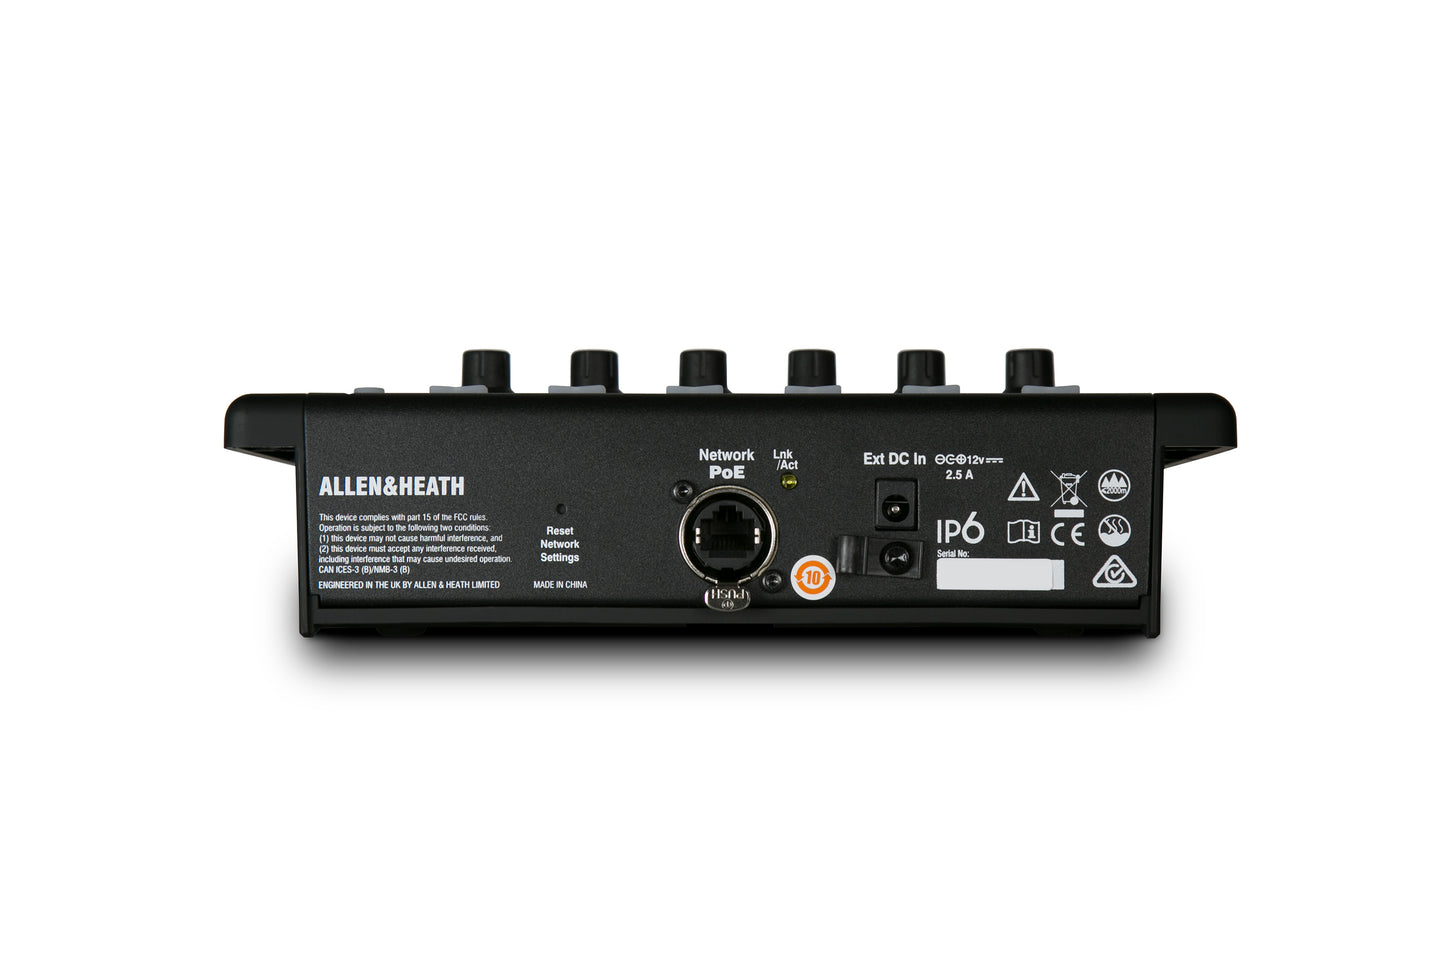 Allen & Heath IP6 6 Rotary Encoder DLive Remote